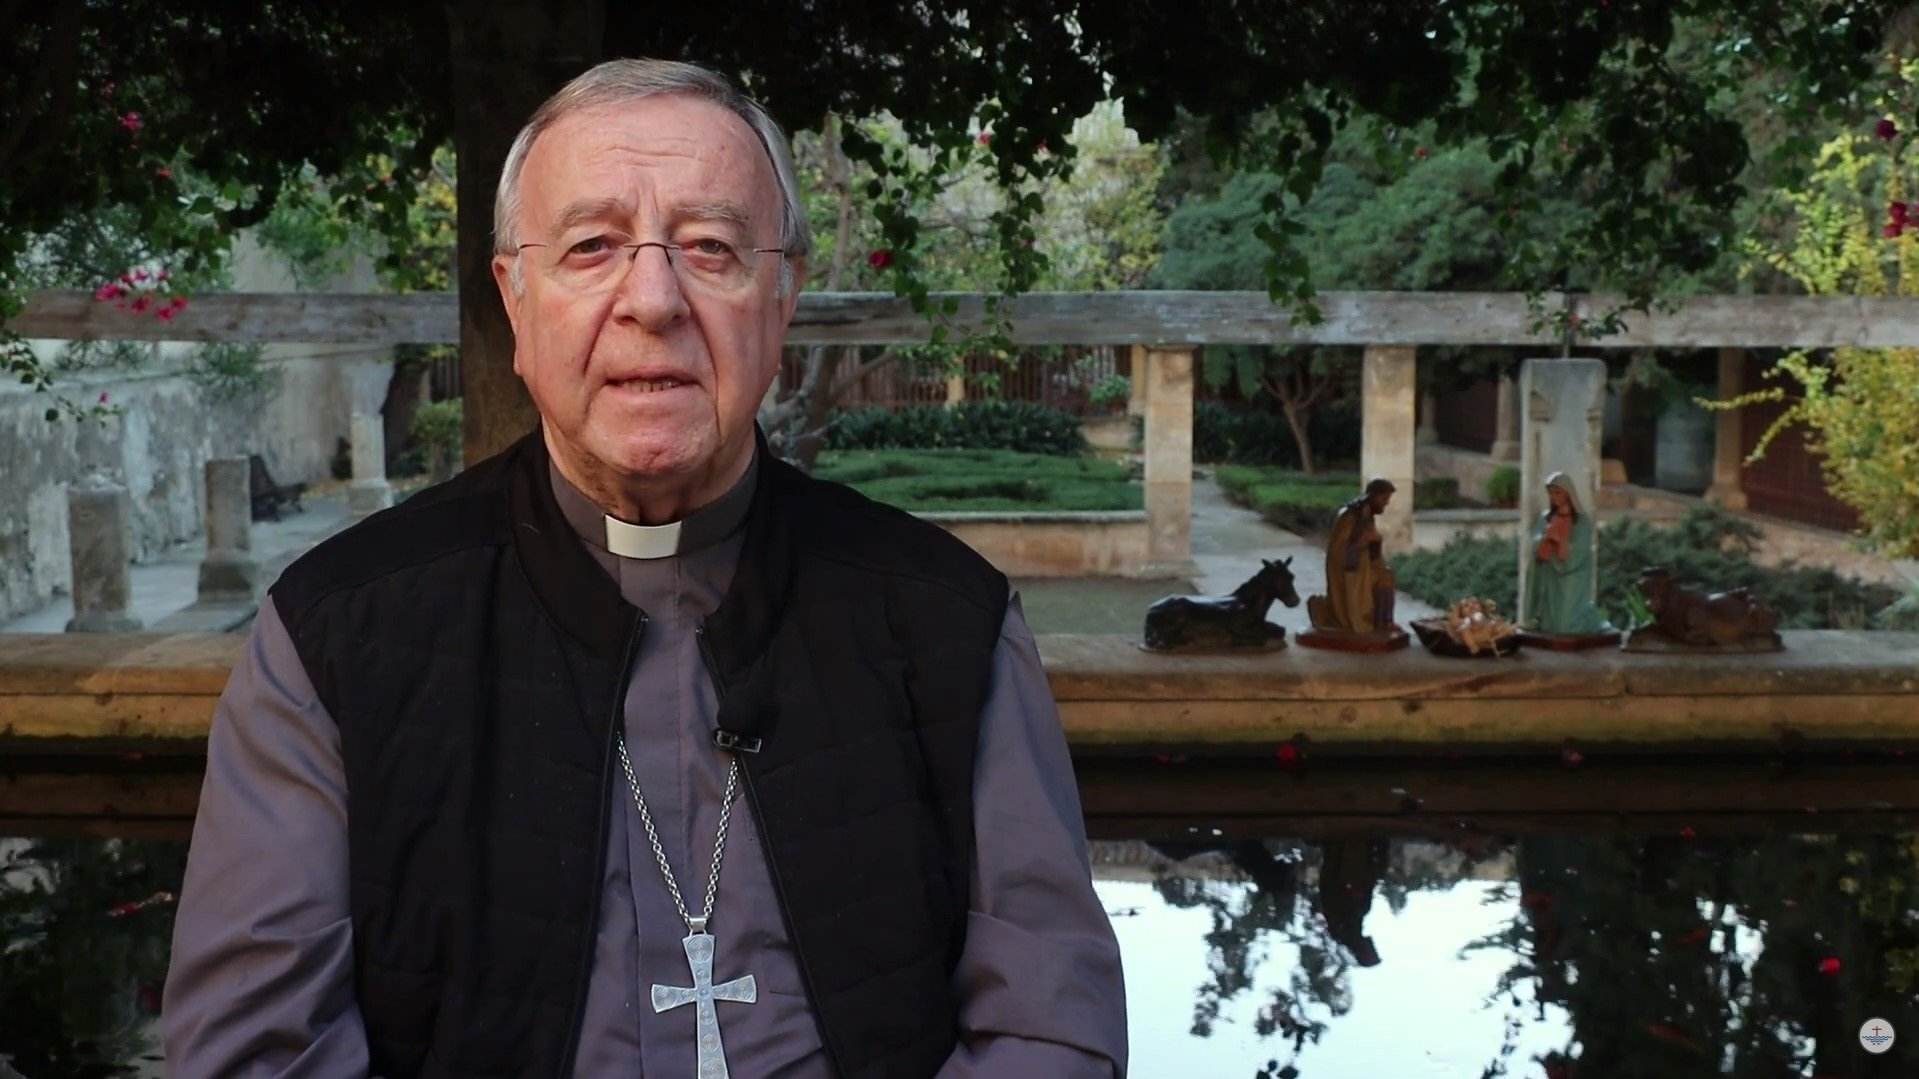 El obispo de Mallorca denuncia insultos por utilizar el catalán en misa